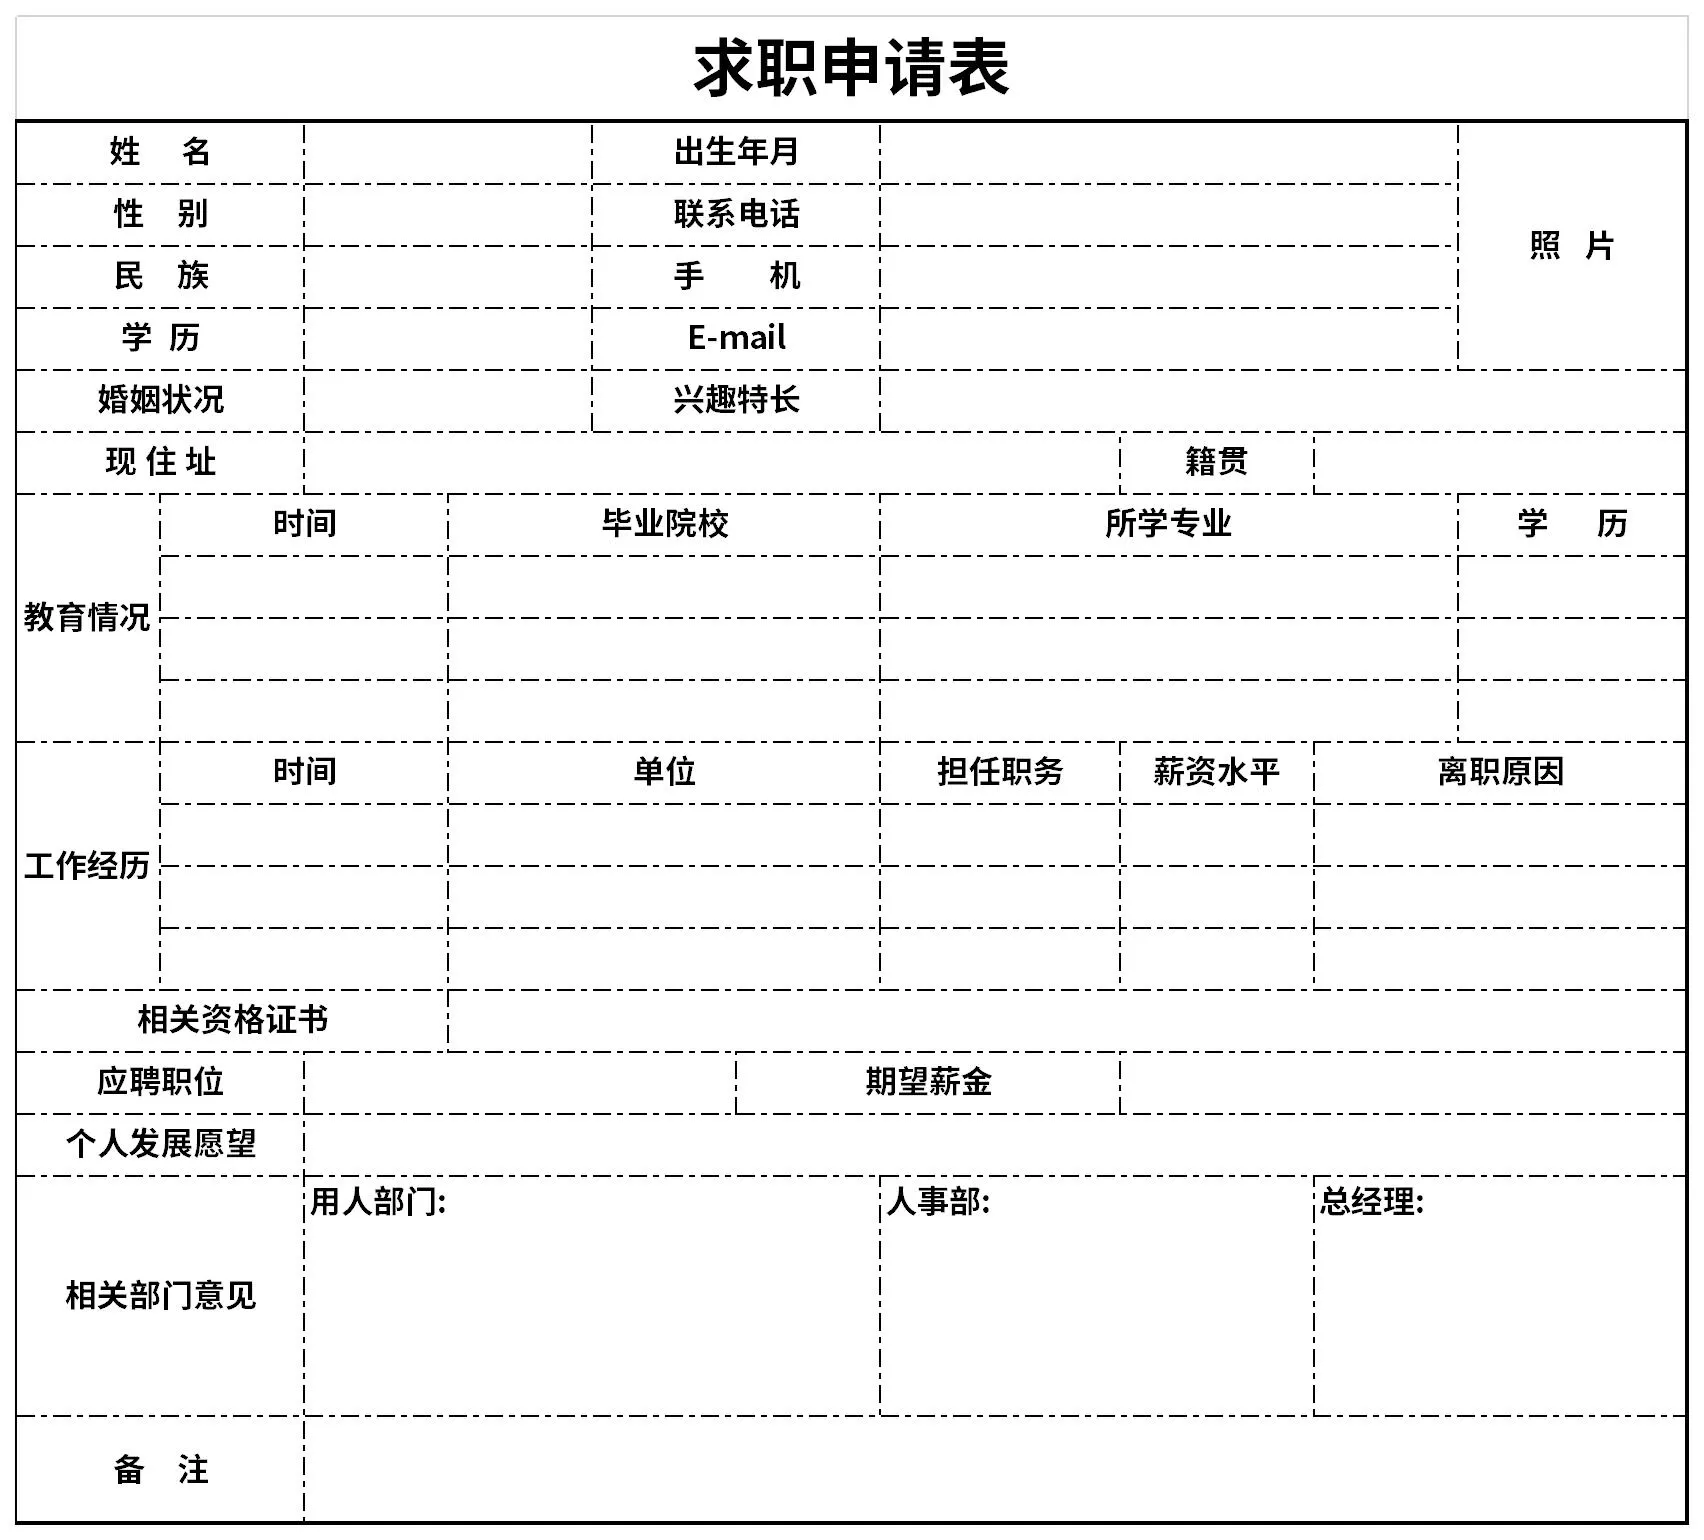 Cách viết hồ sơ xin việc tiếng Trung ấn tượng và chuyên nghiệp